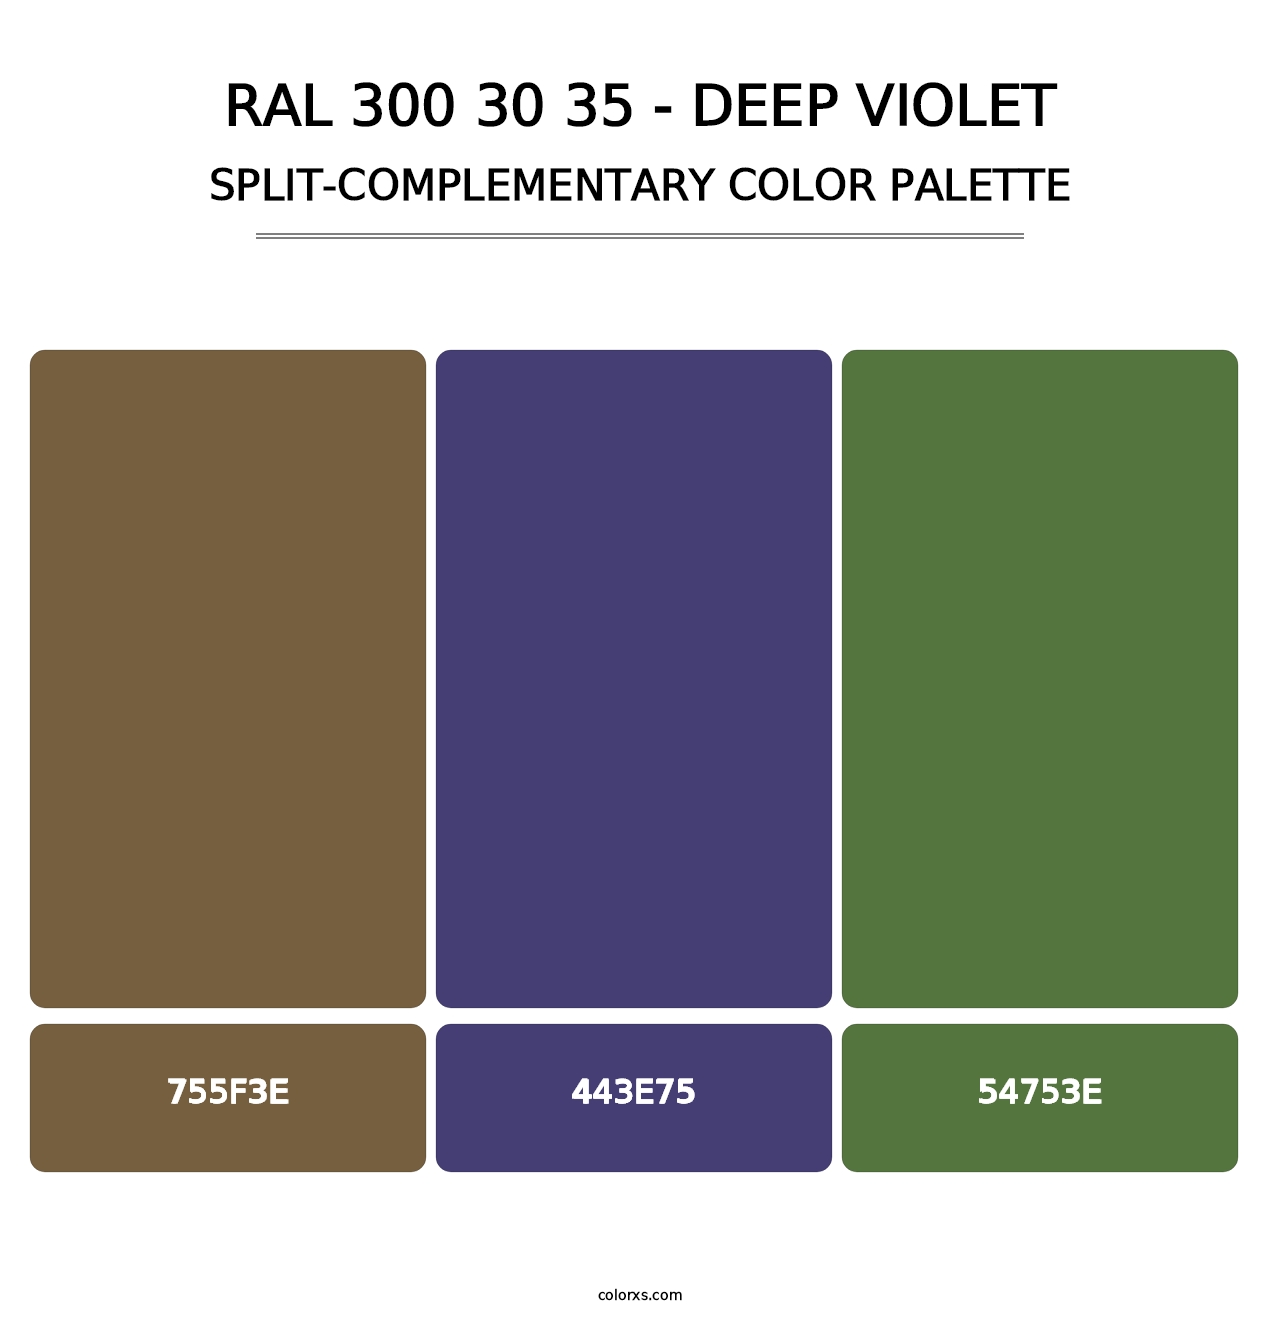 RAL 300 30 35 - Deep Violet - Split-Complementary Color Palette